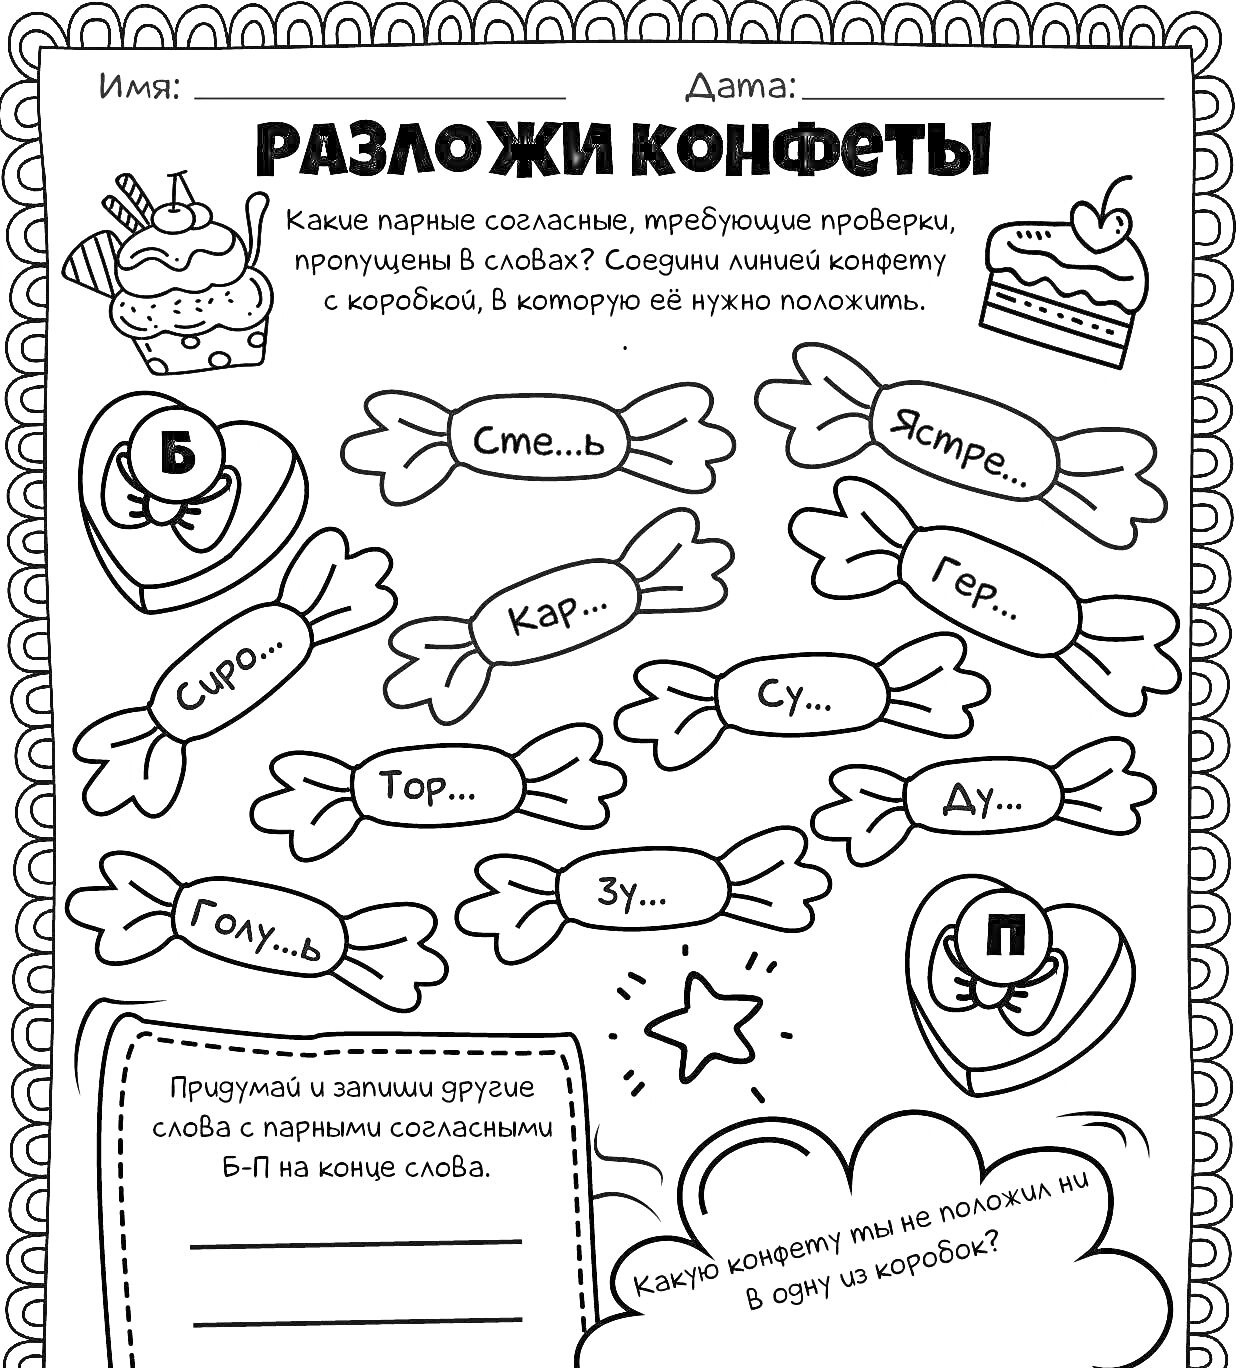 Разложи конфеты: по русскому языку 2 класс парные согласные (игра с конфетами для проверки парных согласных в словах)